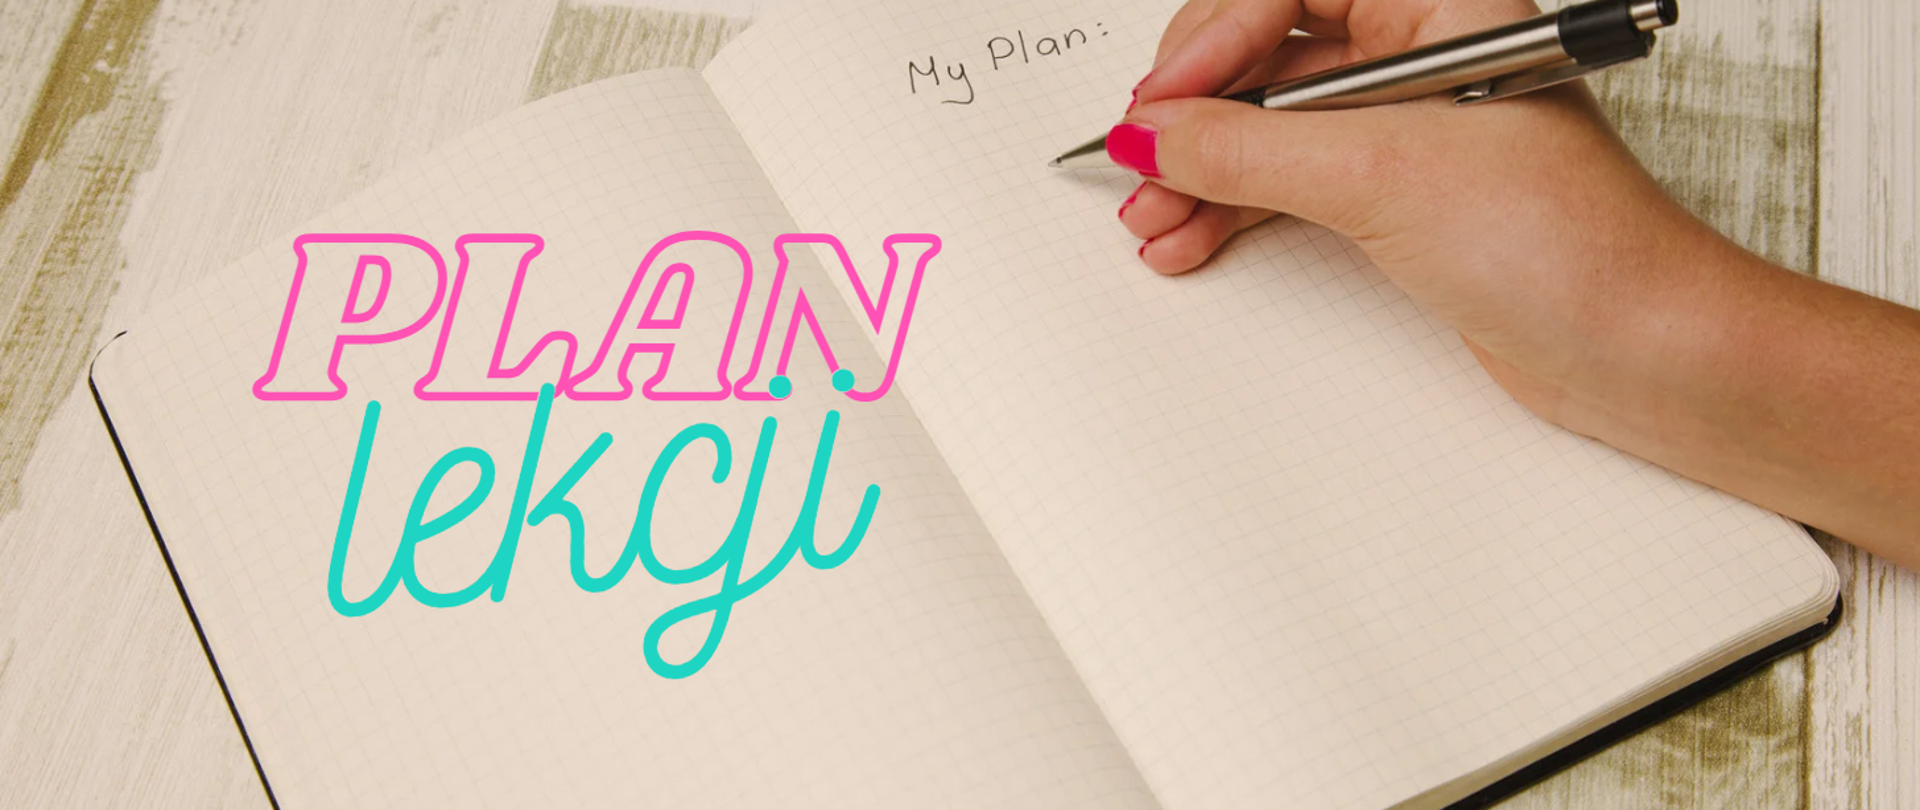 Zdjęcie w tle przedstawiające dłoń trzymającą długopis nad kartką w zeszycie w kratkę, dłoń znajduje się pod odręcznym napisem: My Plan. Po lewej stronie zdjęcia napis: plan lekcji.